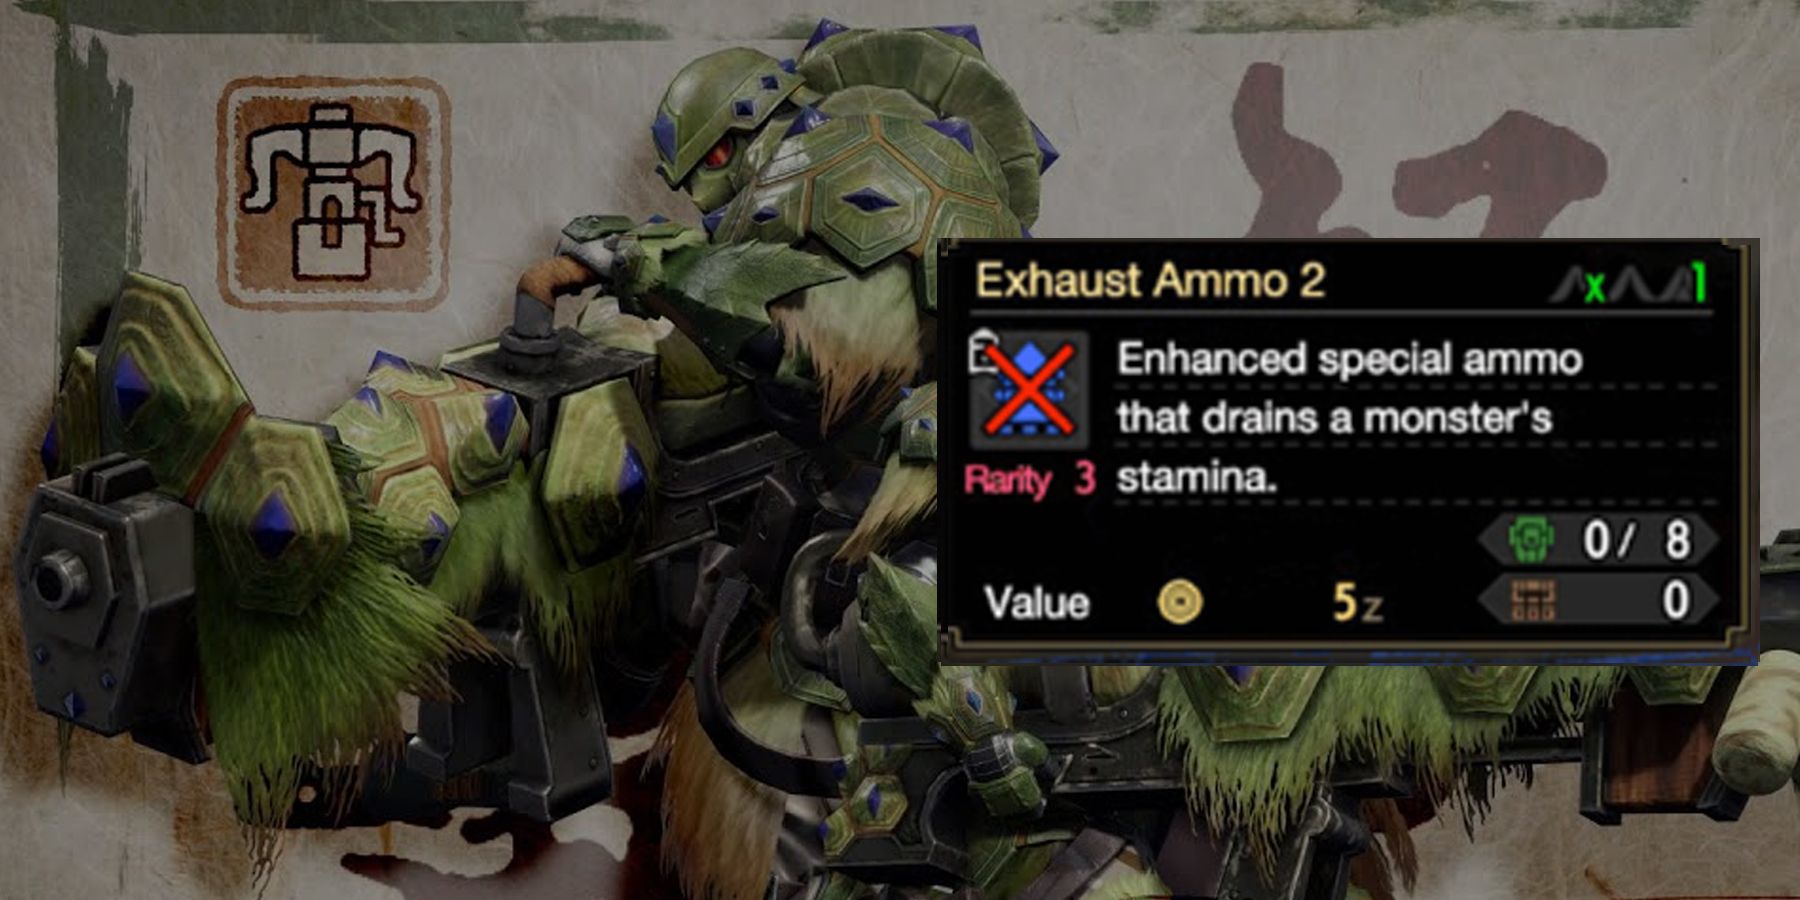 Exhaust Ammo 2